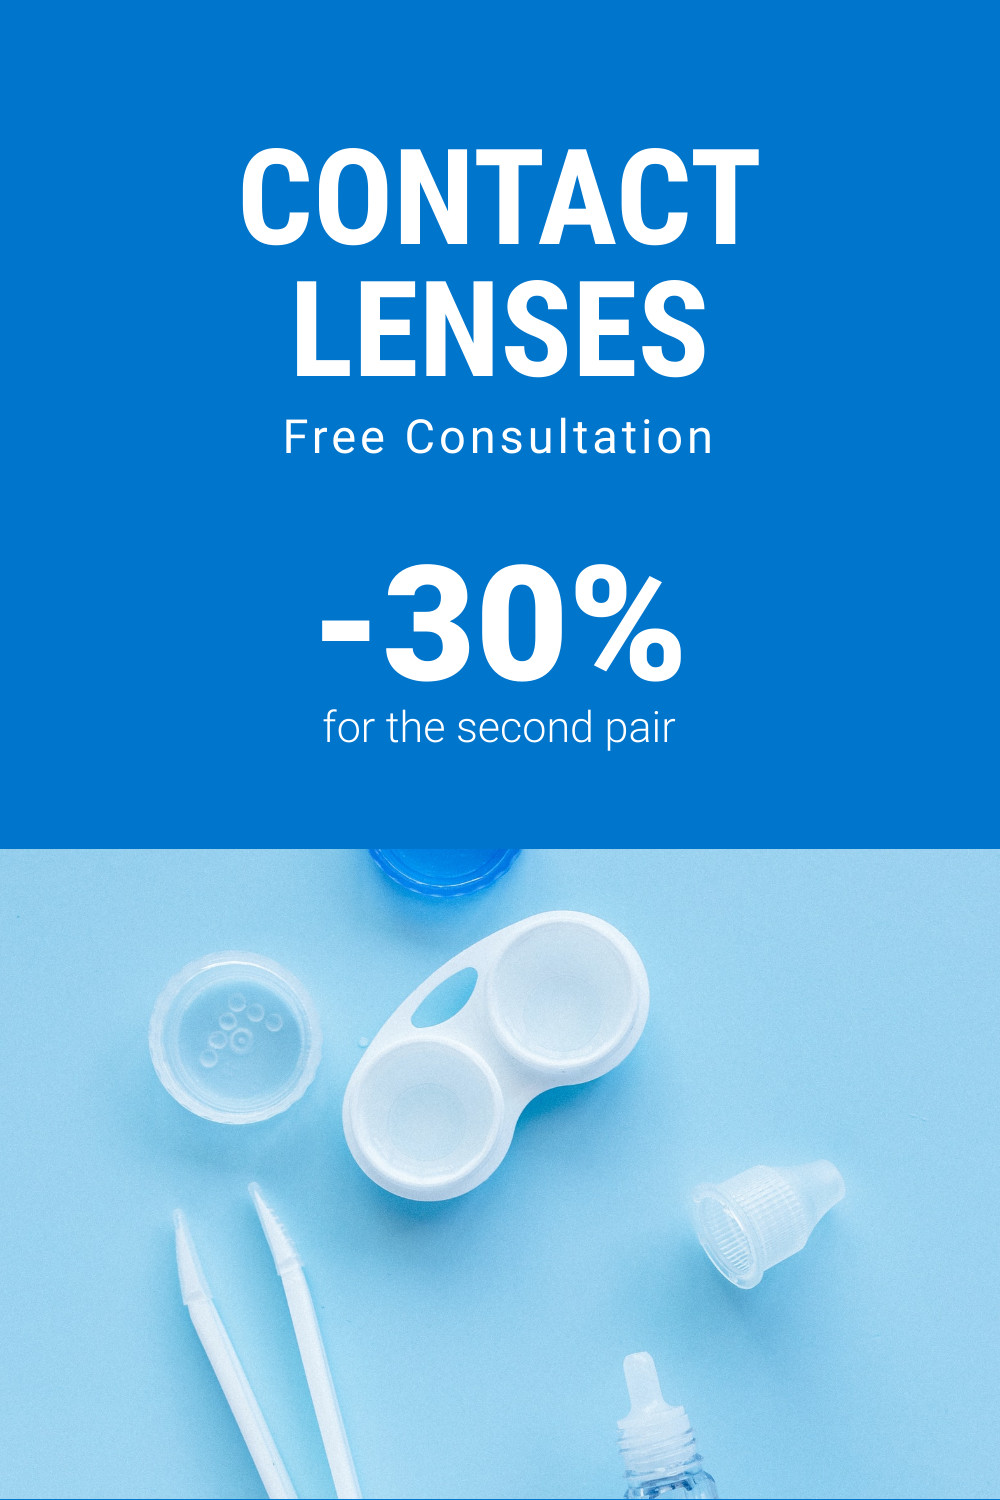 Contact Lenses Promo